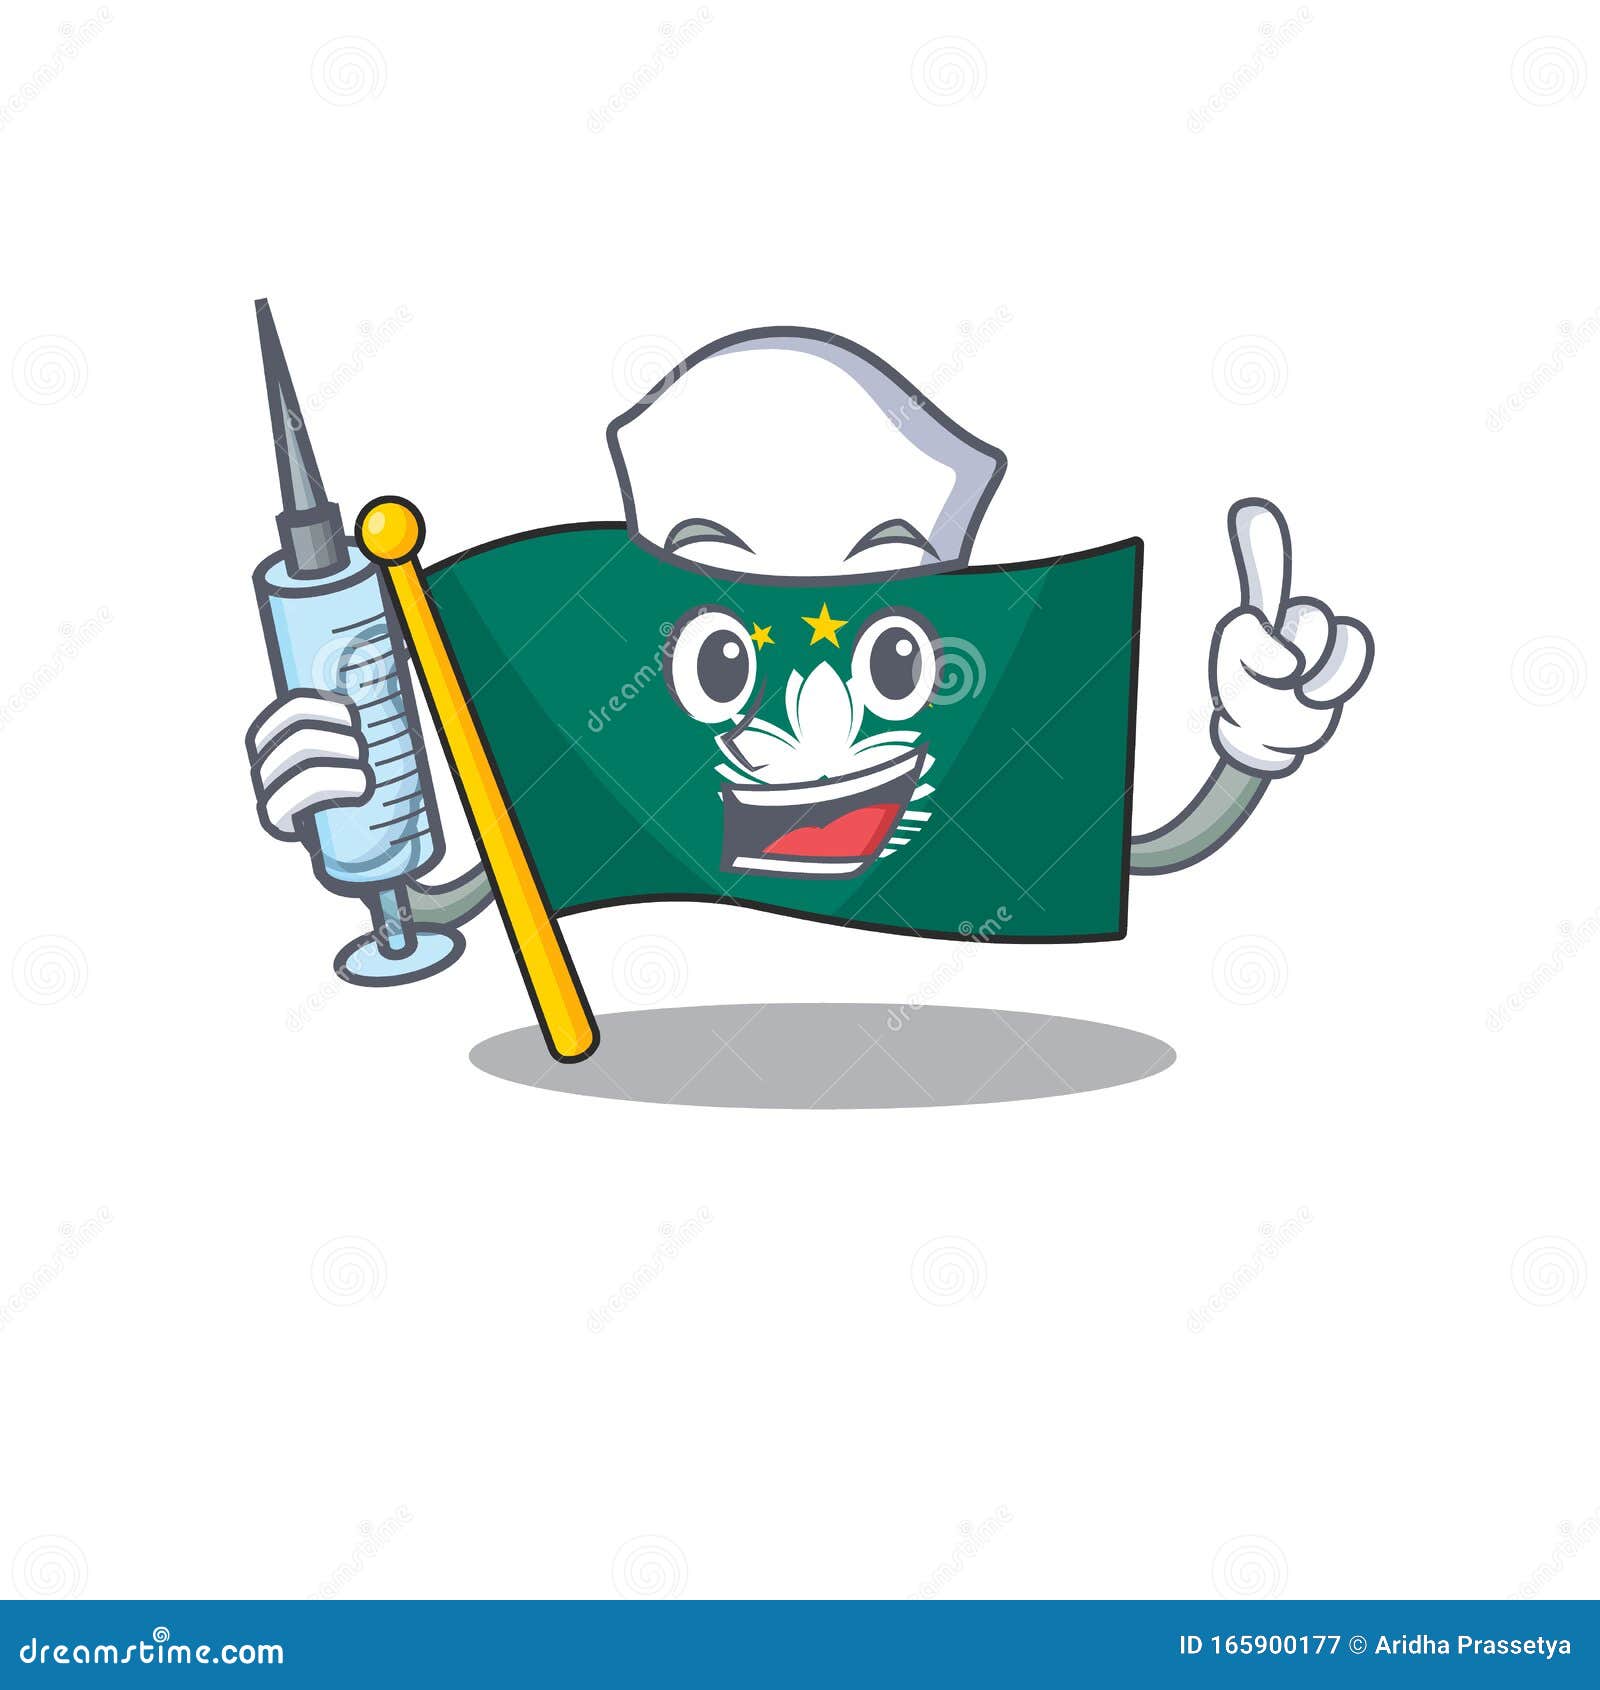 desenho de personagem mascote enfermeira fofa